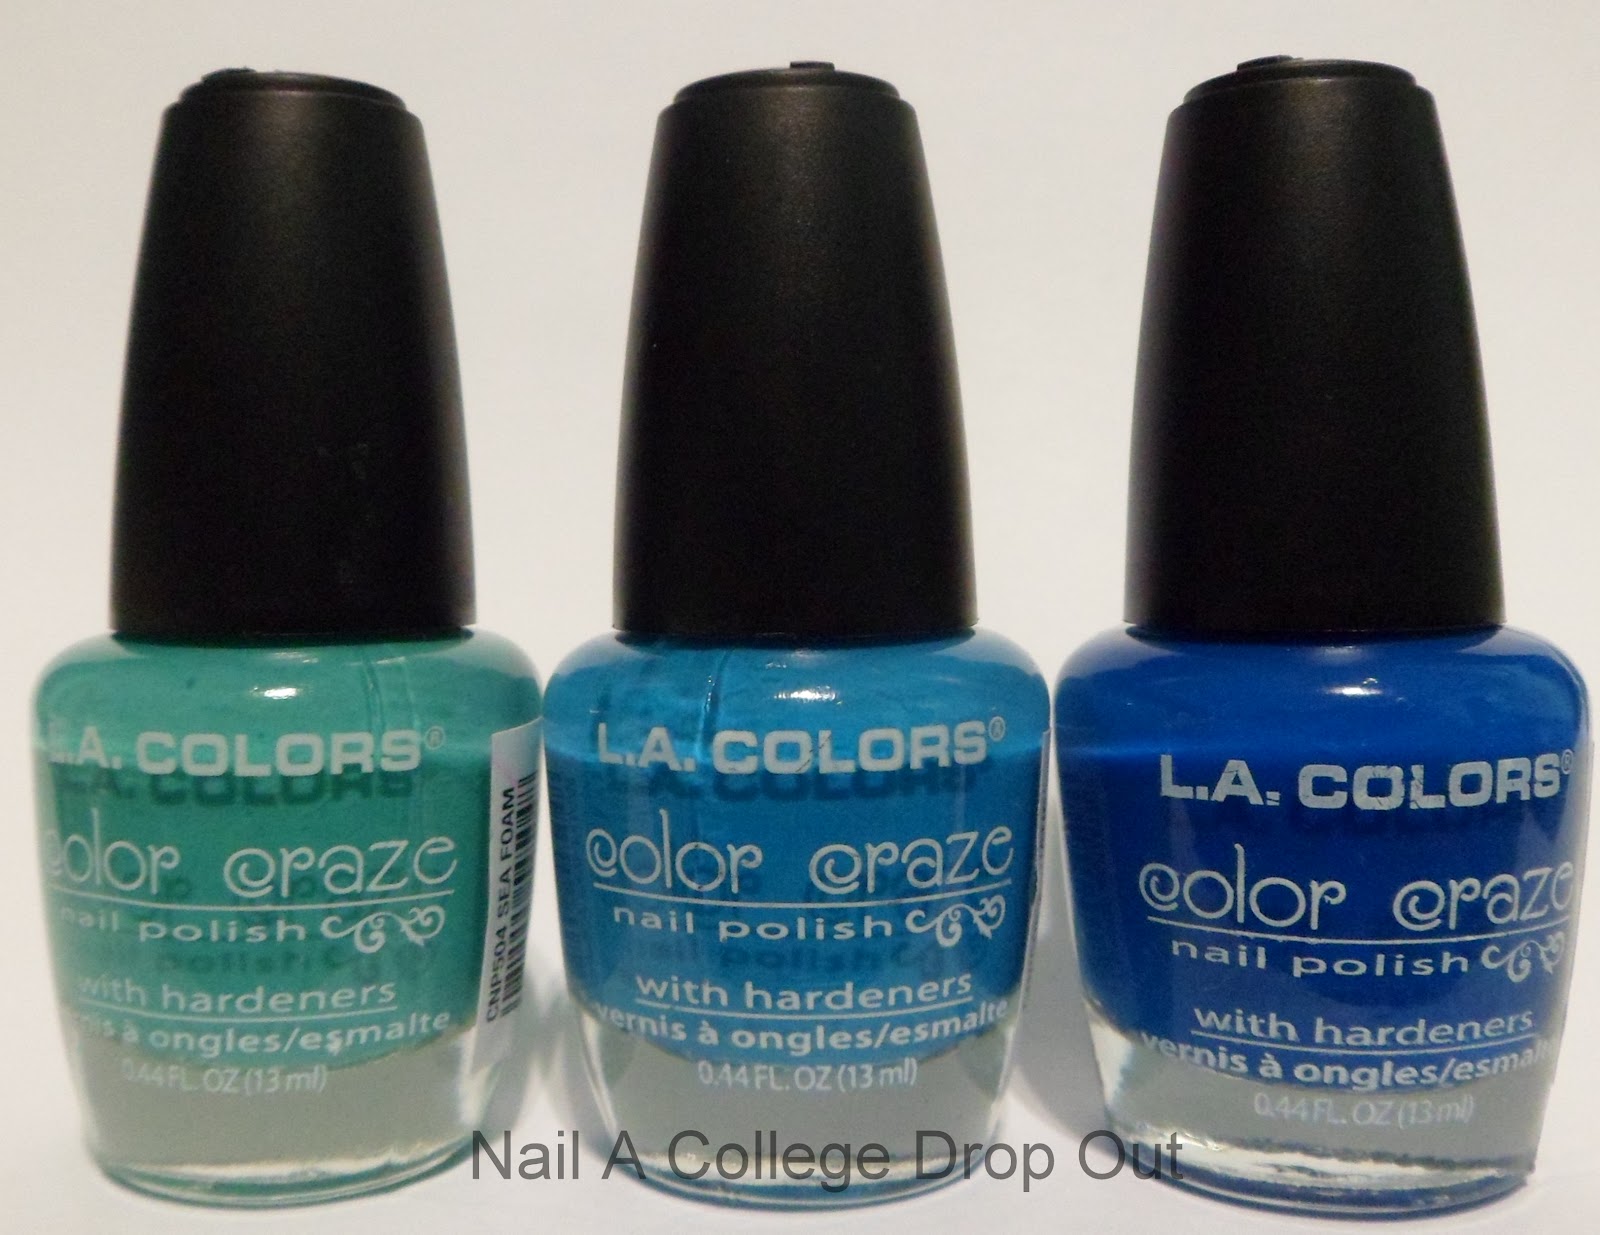 6. L.A. Colors Color Craze Nail Polish - Matte Glow - wide 9